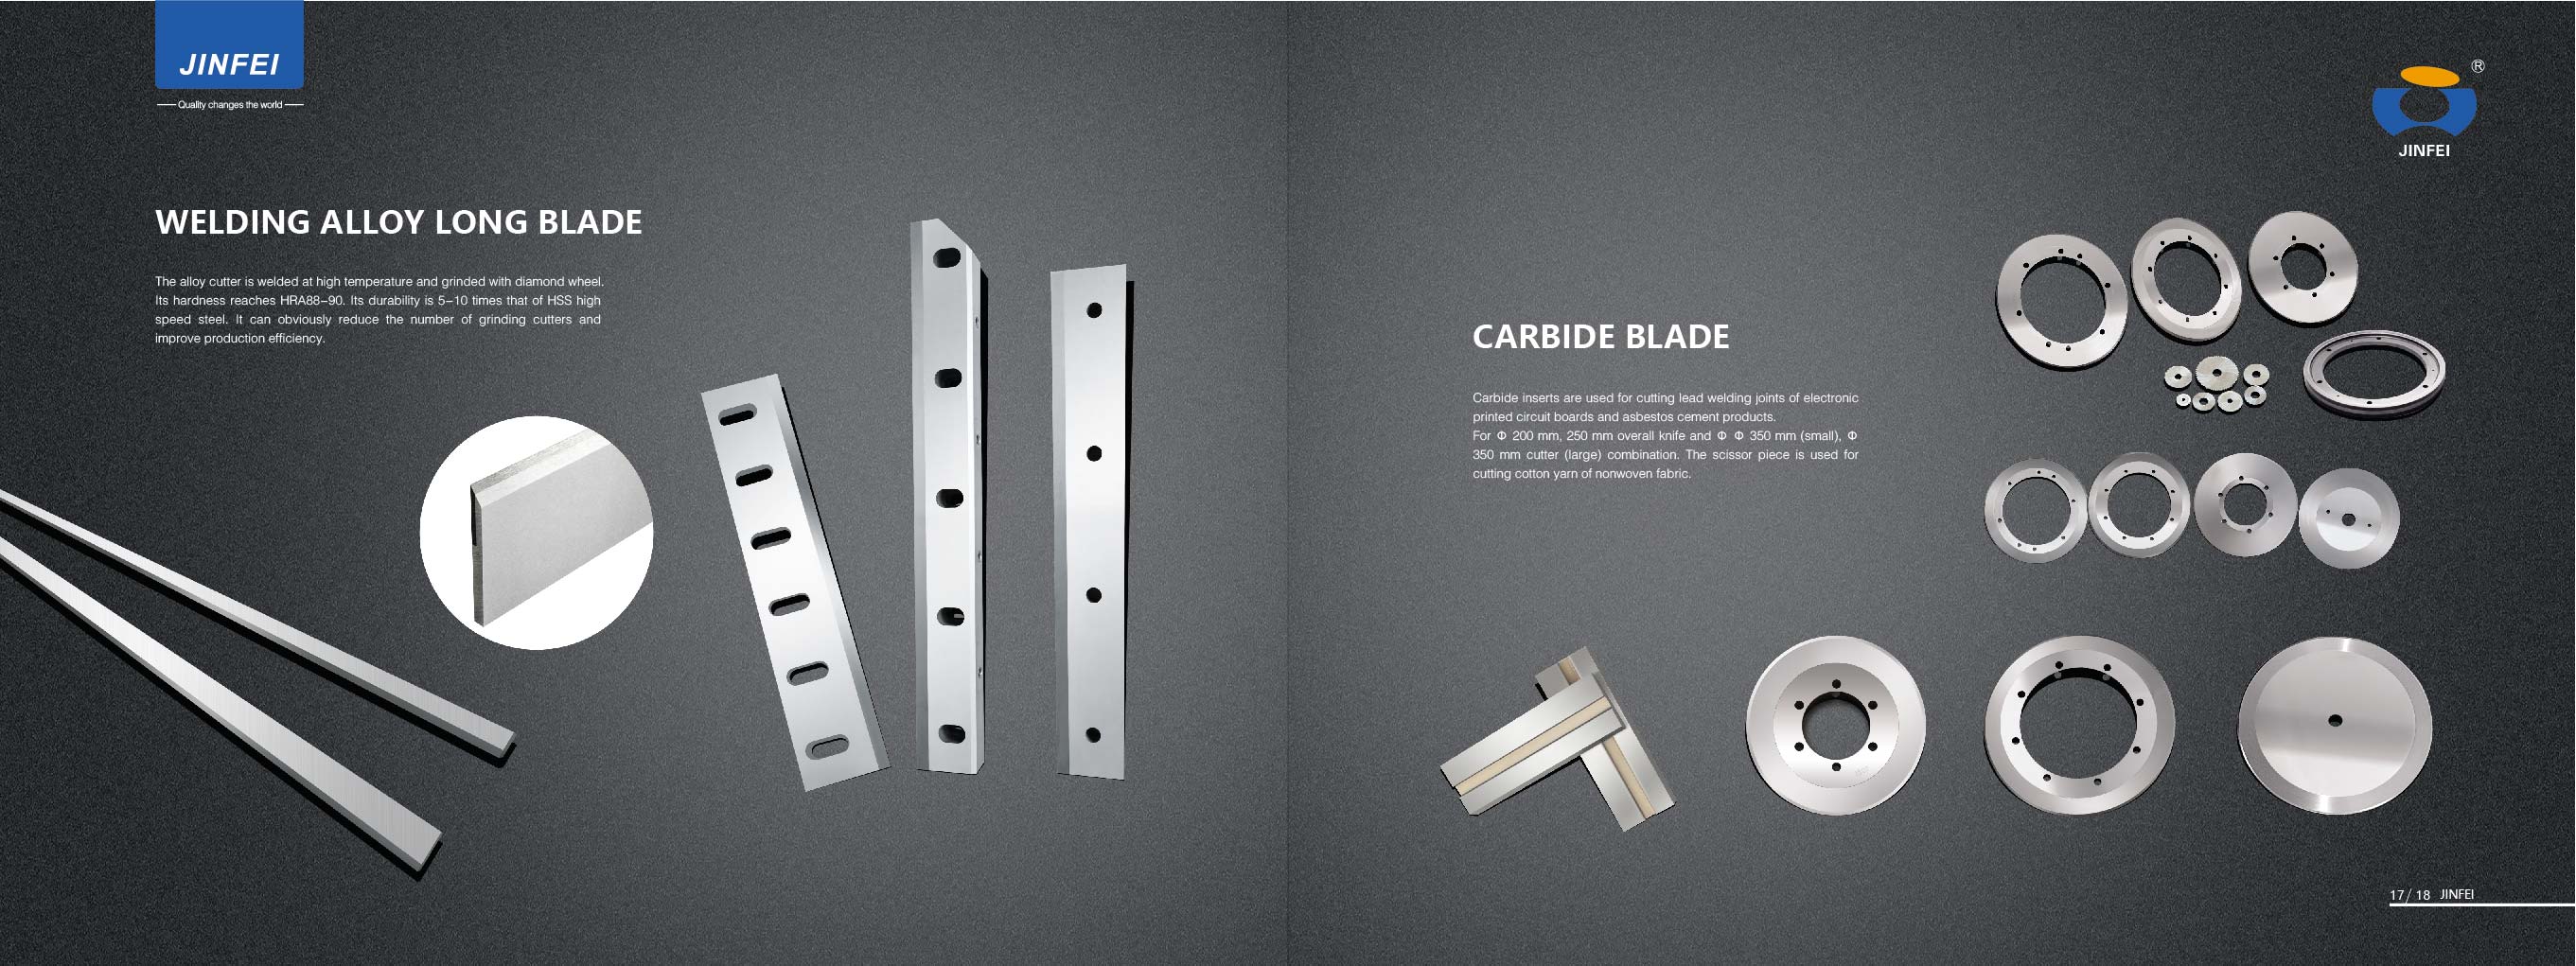 carbide blade